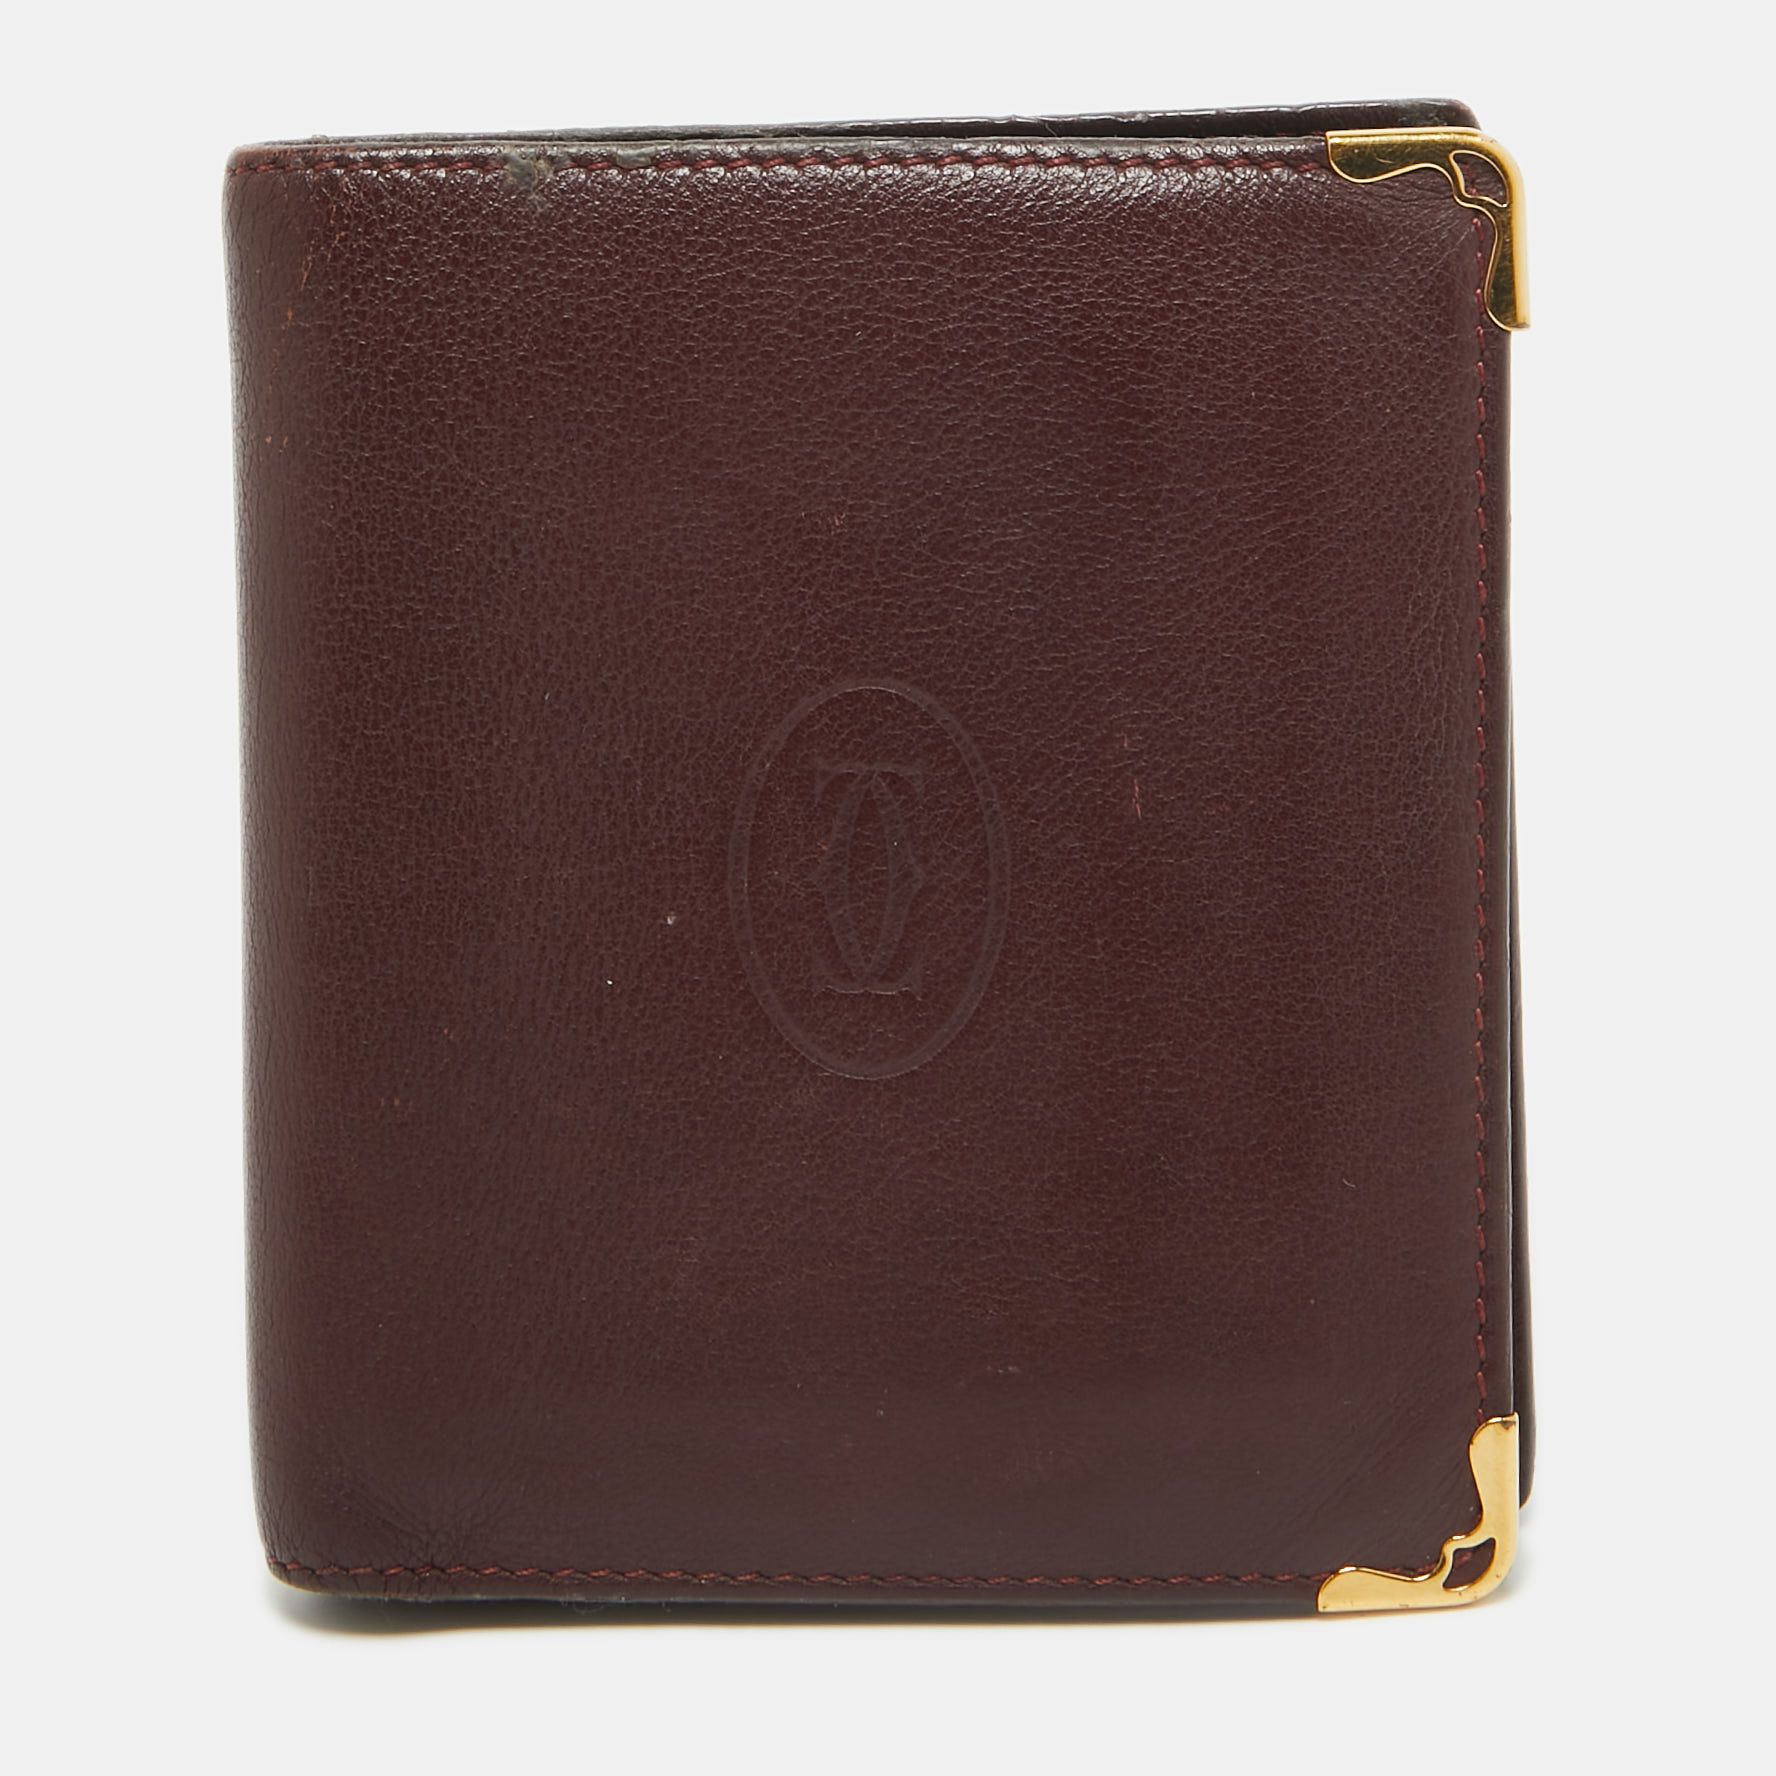 Cartier burgundy leather must de cartier bifold wallet